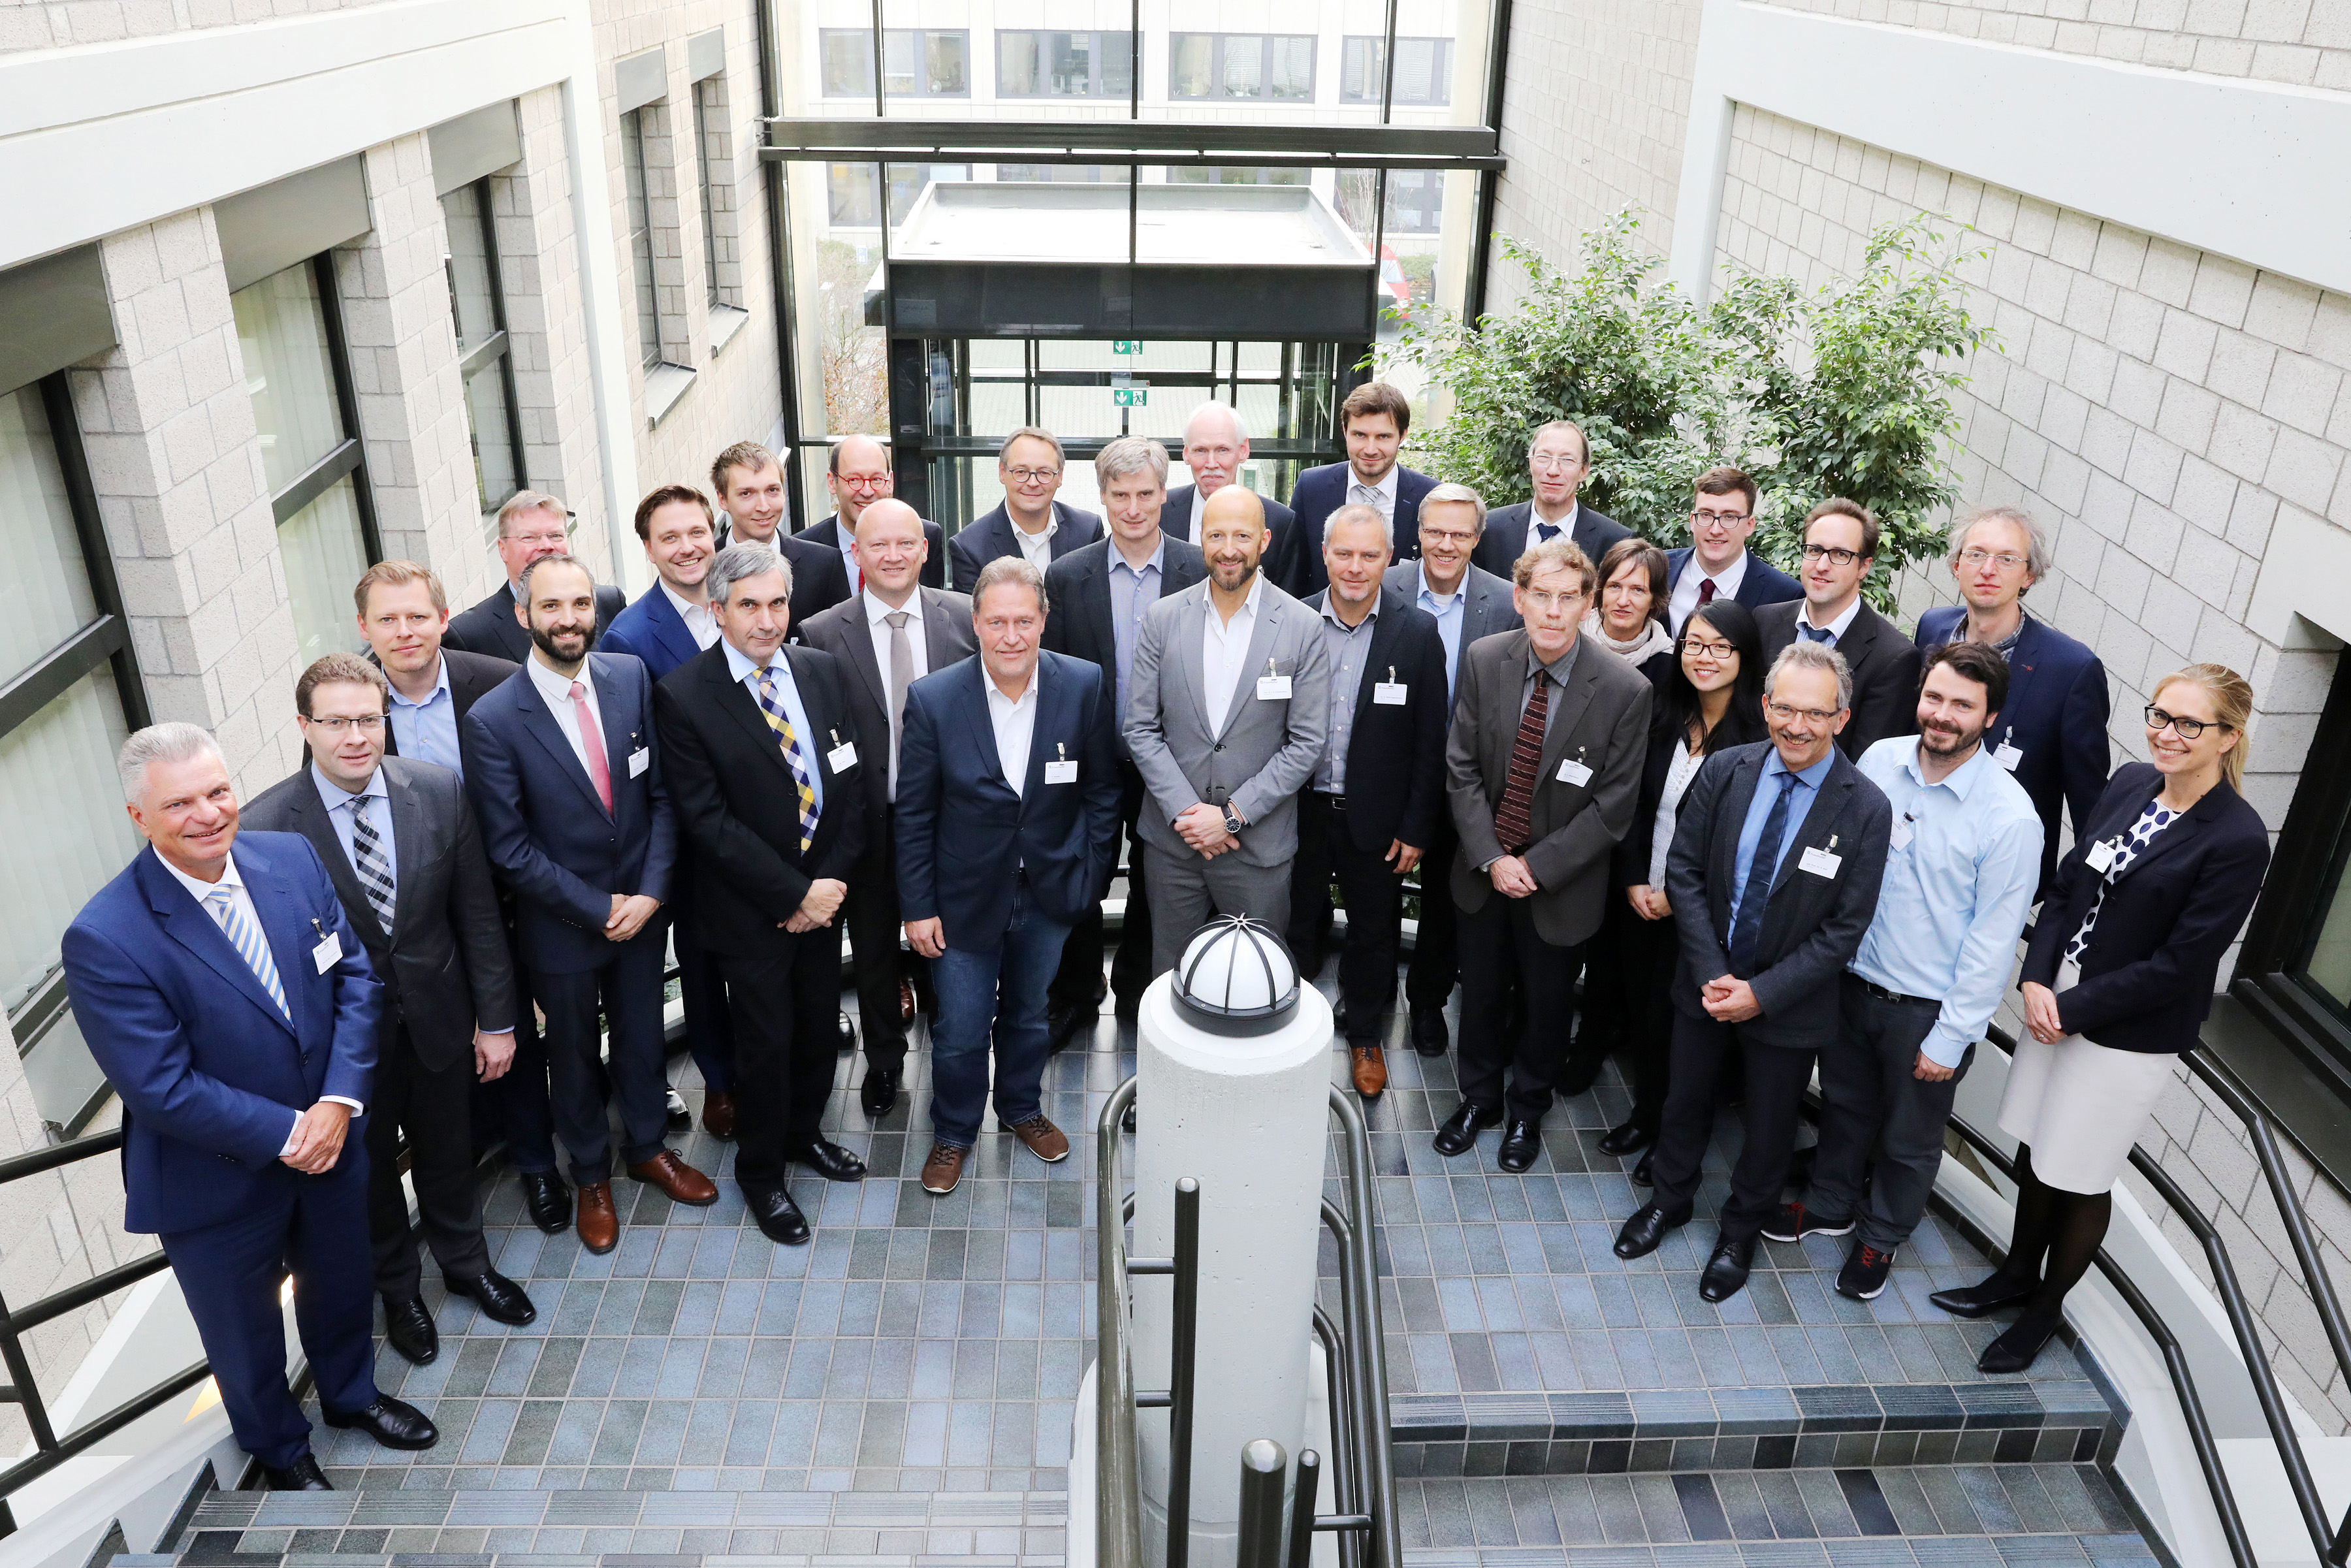 Bild 1: Partner aus Industrie und Wissenschaft trafen sich am 14.11.2017 zum Kick-off des Fraunhofer-Leitprojekts futureAM in Aachen.